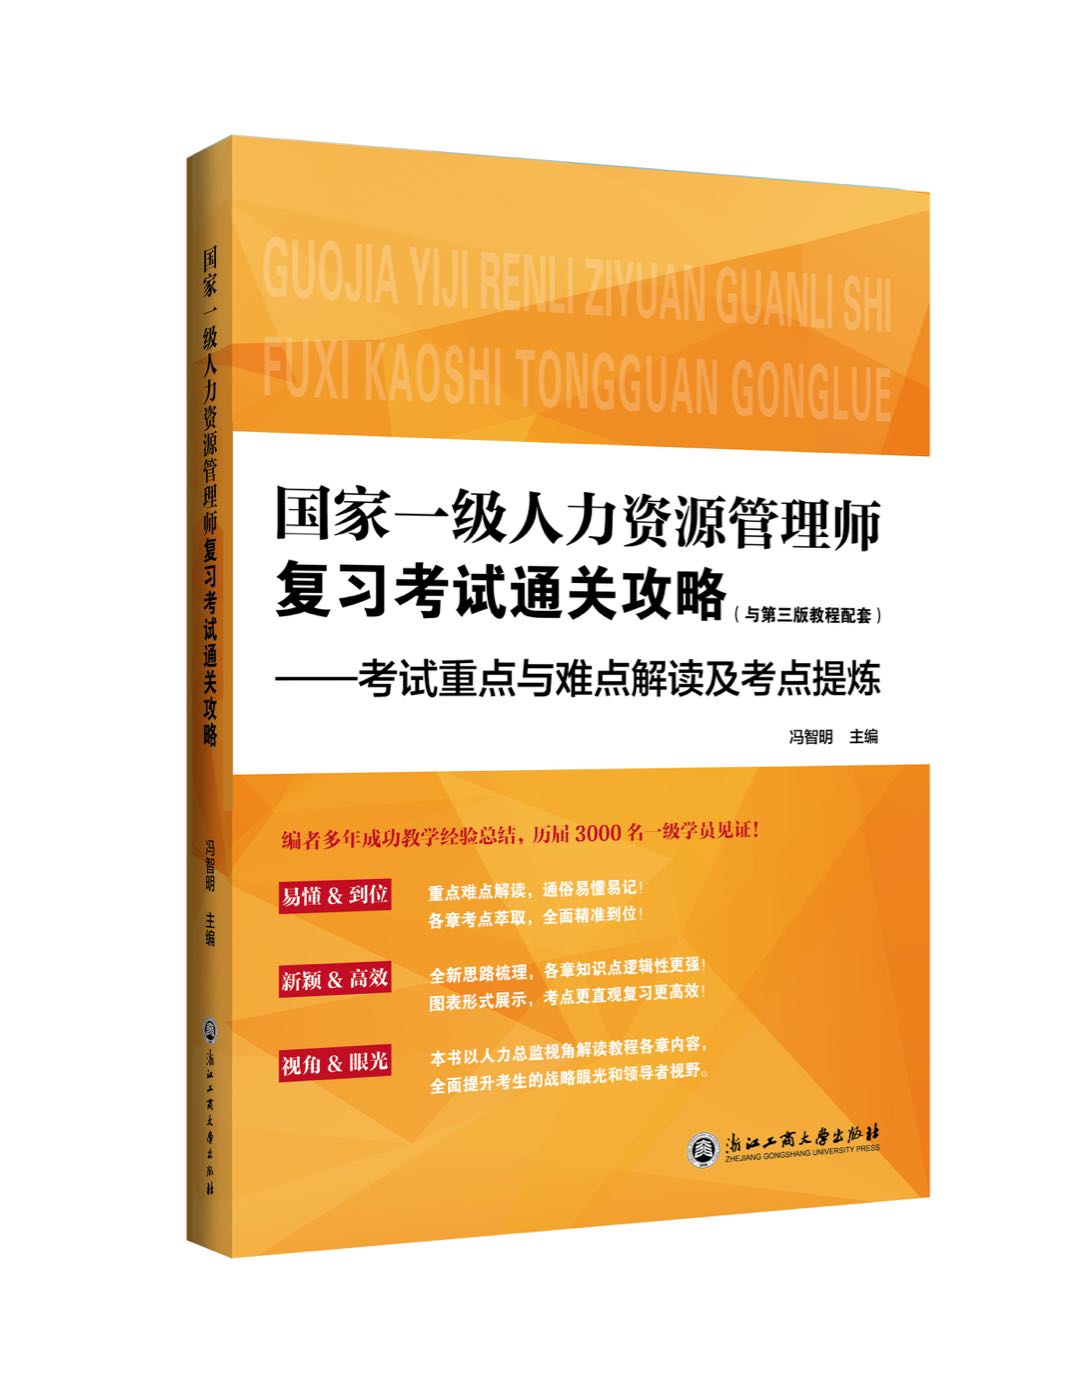 热烈祝贺冯智明导师新书《国家一级人力资源管理师复习考试通关攻略》正式出版发行！